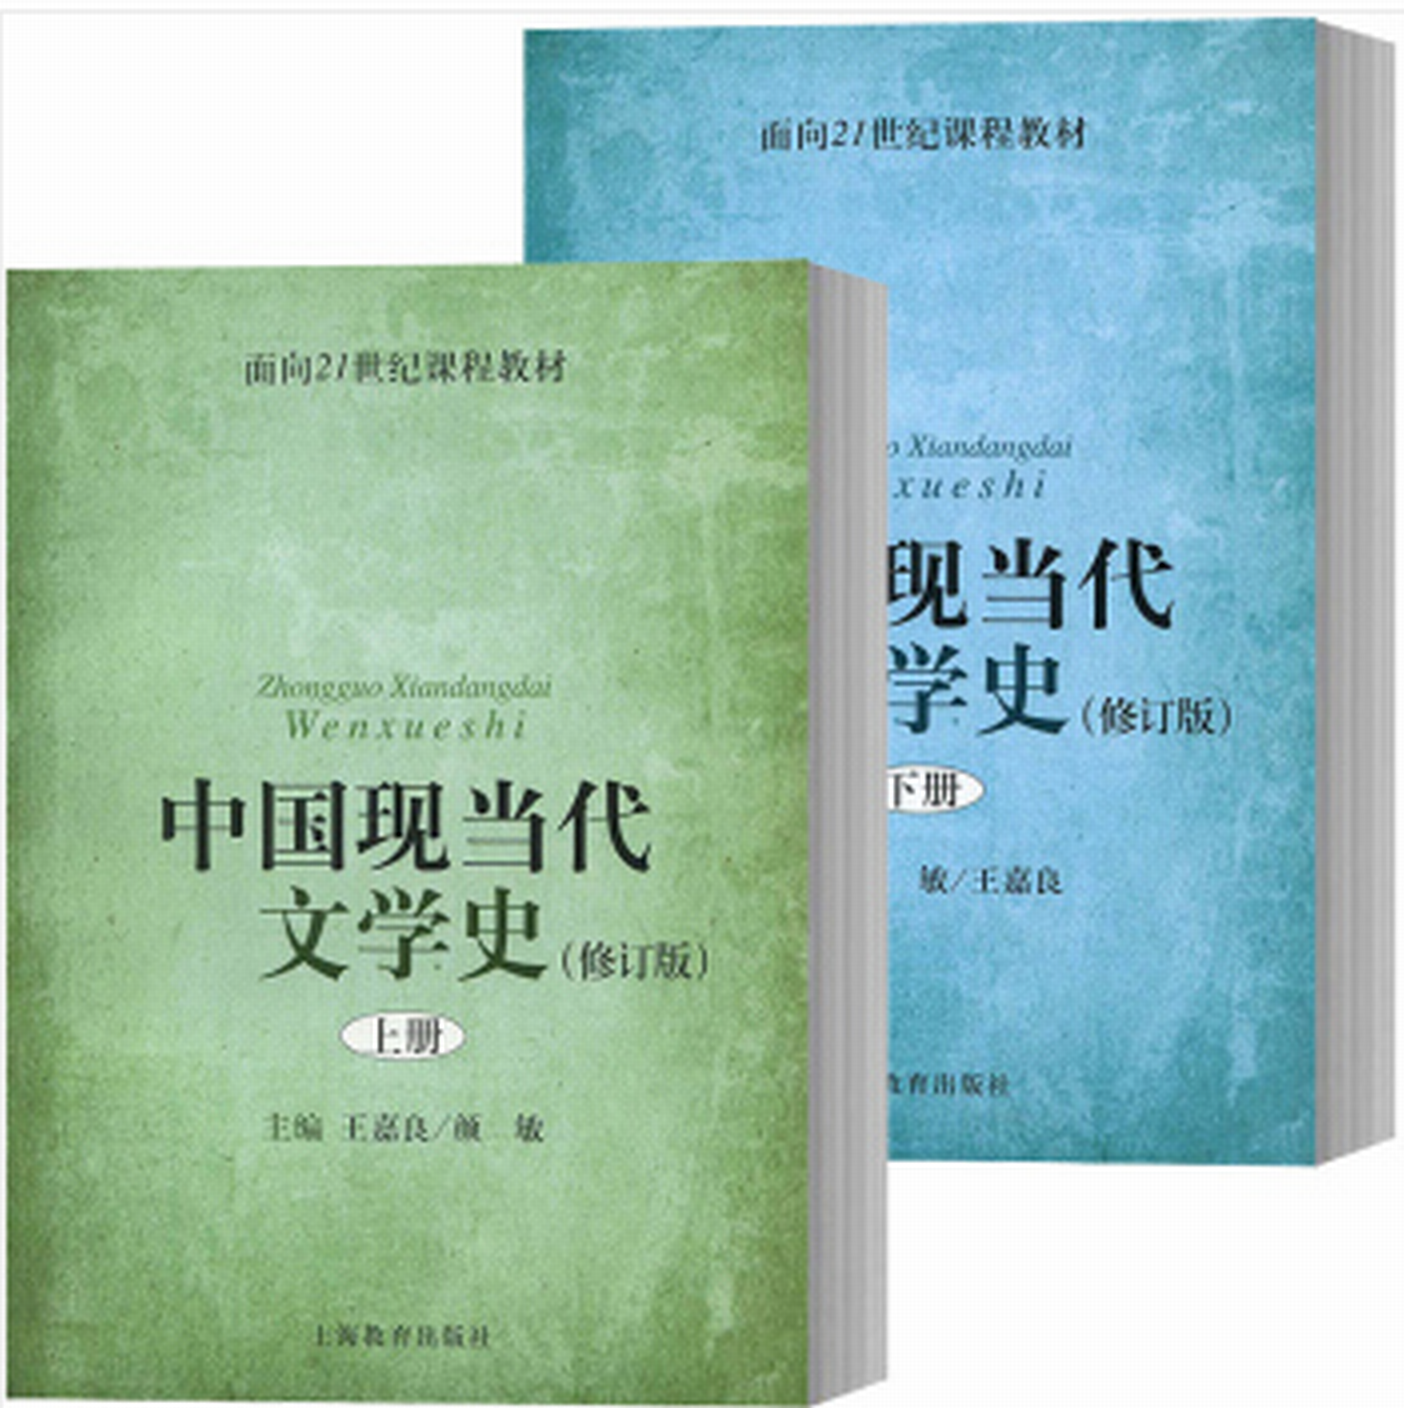 中國現當代文學史(上海教育出版社書籍)